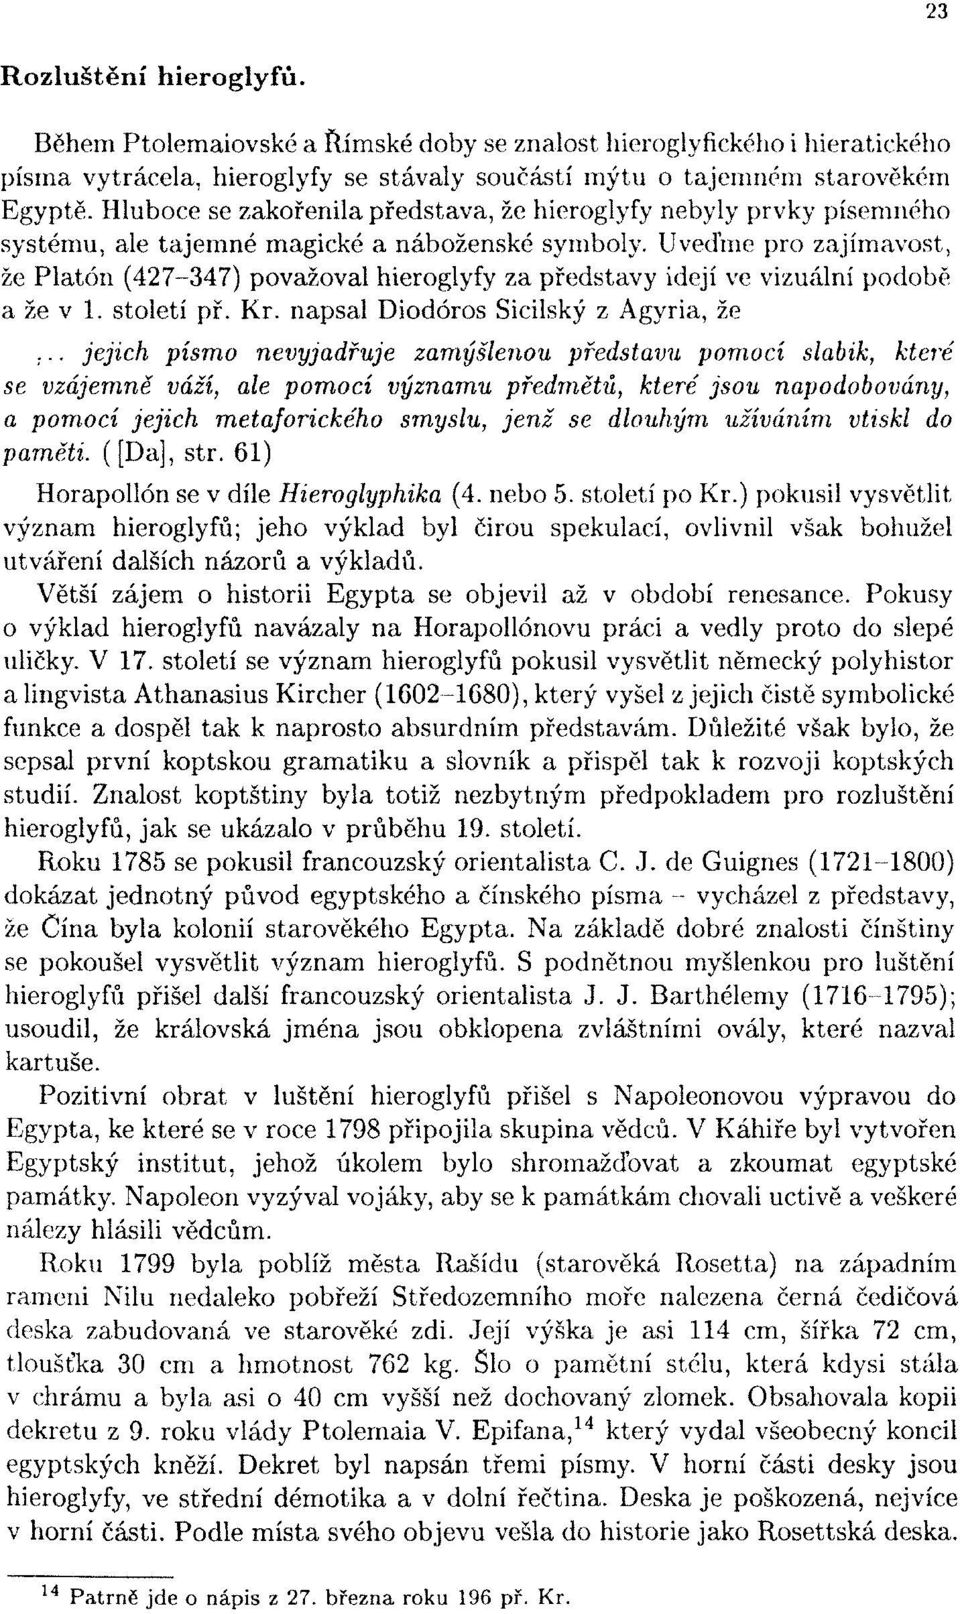 Uveďme pro zajímavost, že Platón (427-347) považoval hieroglyfy za představy idejí ve vizuální podobě a že v 1. století př, Kr. napsal Diodóros Sicilský z Agyria, že.